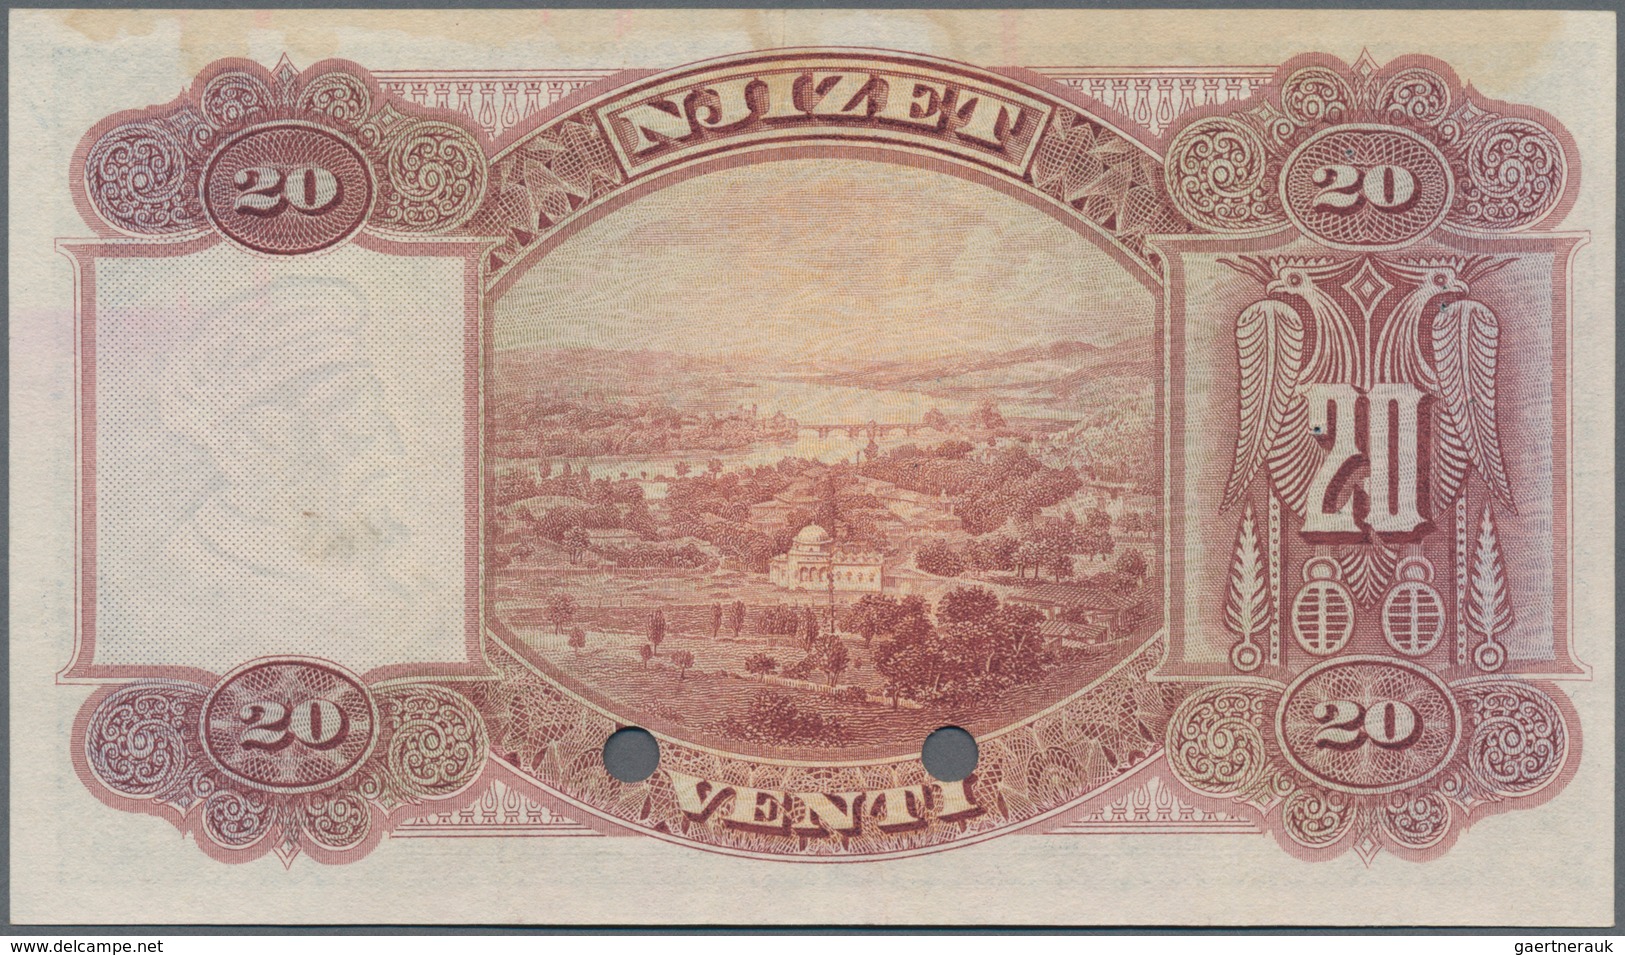 Albania / Albanien: Banca Nazionale D'Albania 20 Franka Ari ND(1926) SPECIMEN, P.3s, Almost Perfect - Albania